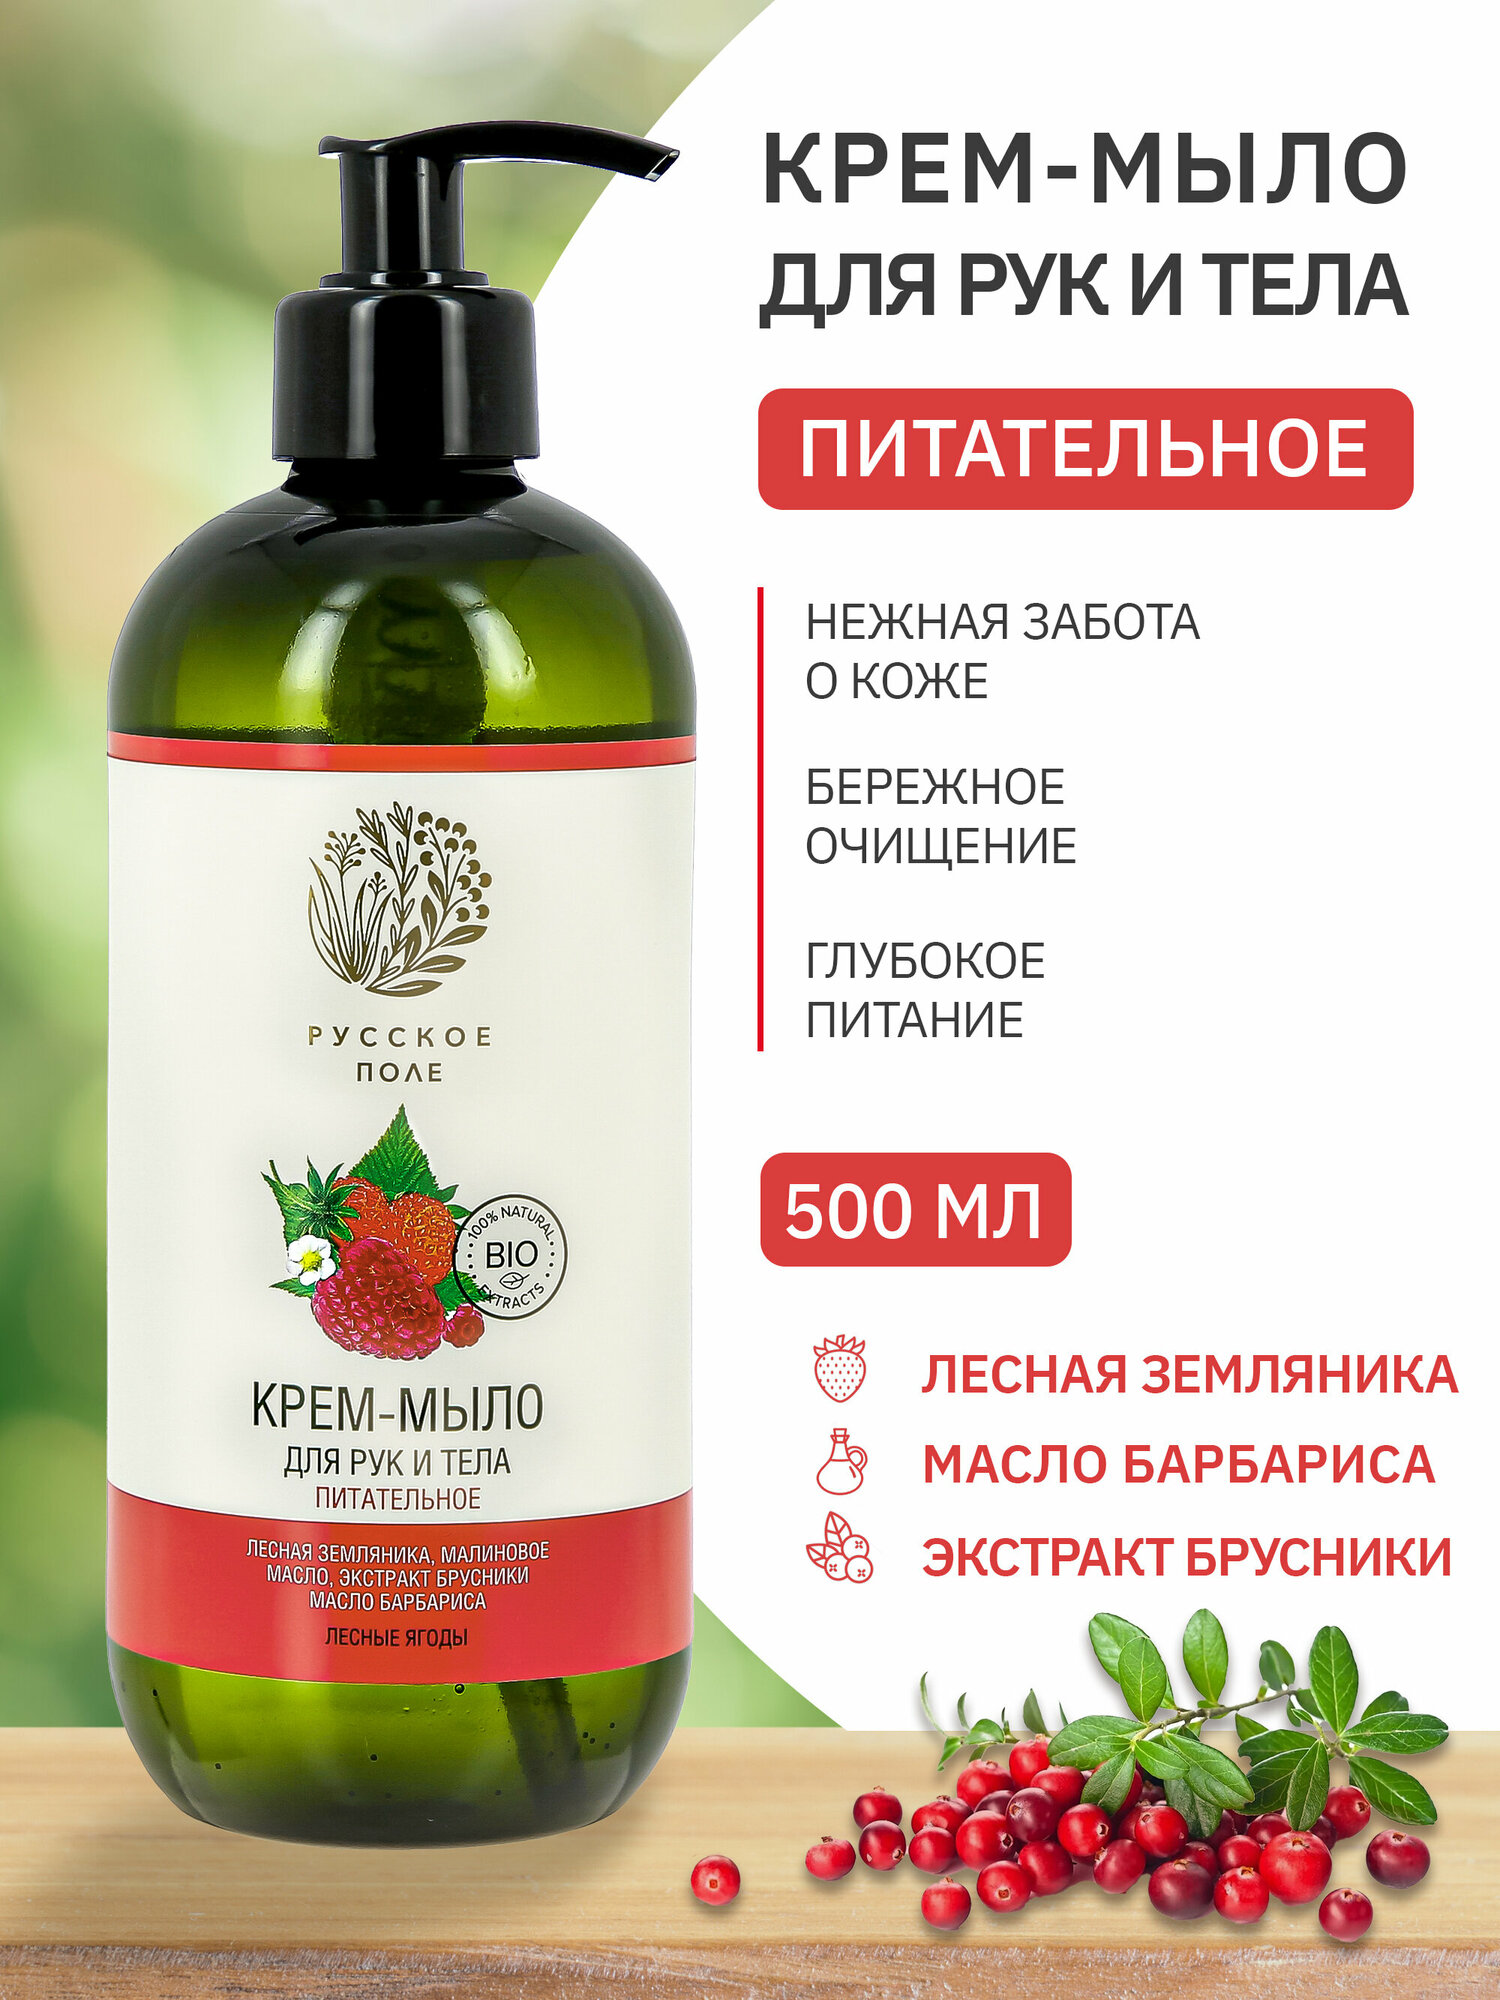 Питательное мыло для тела и рук "Русское поле" 500мл